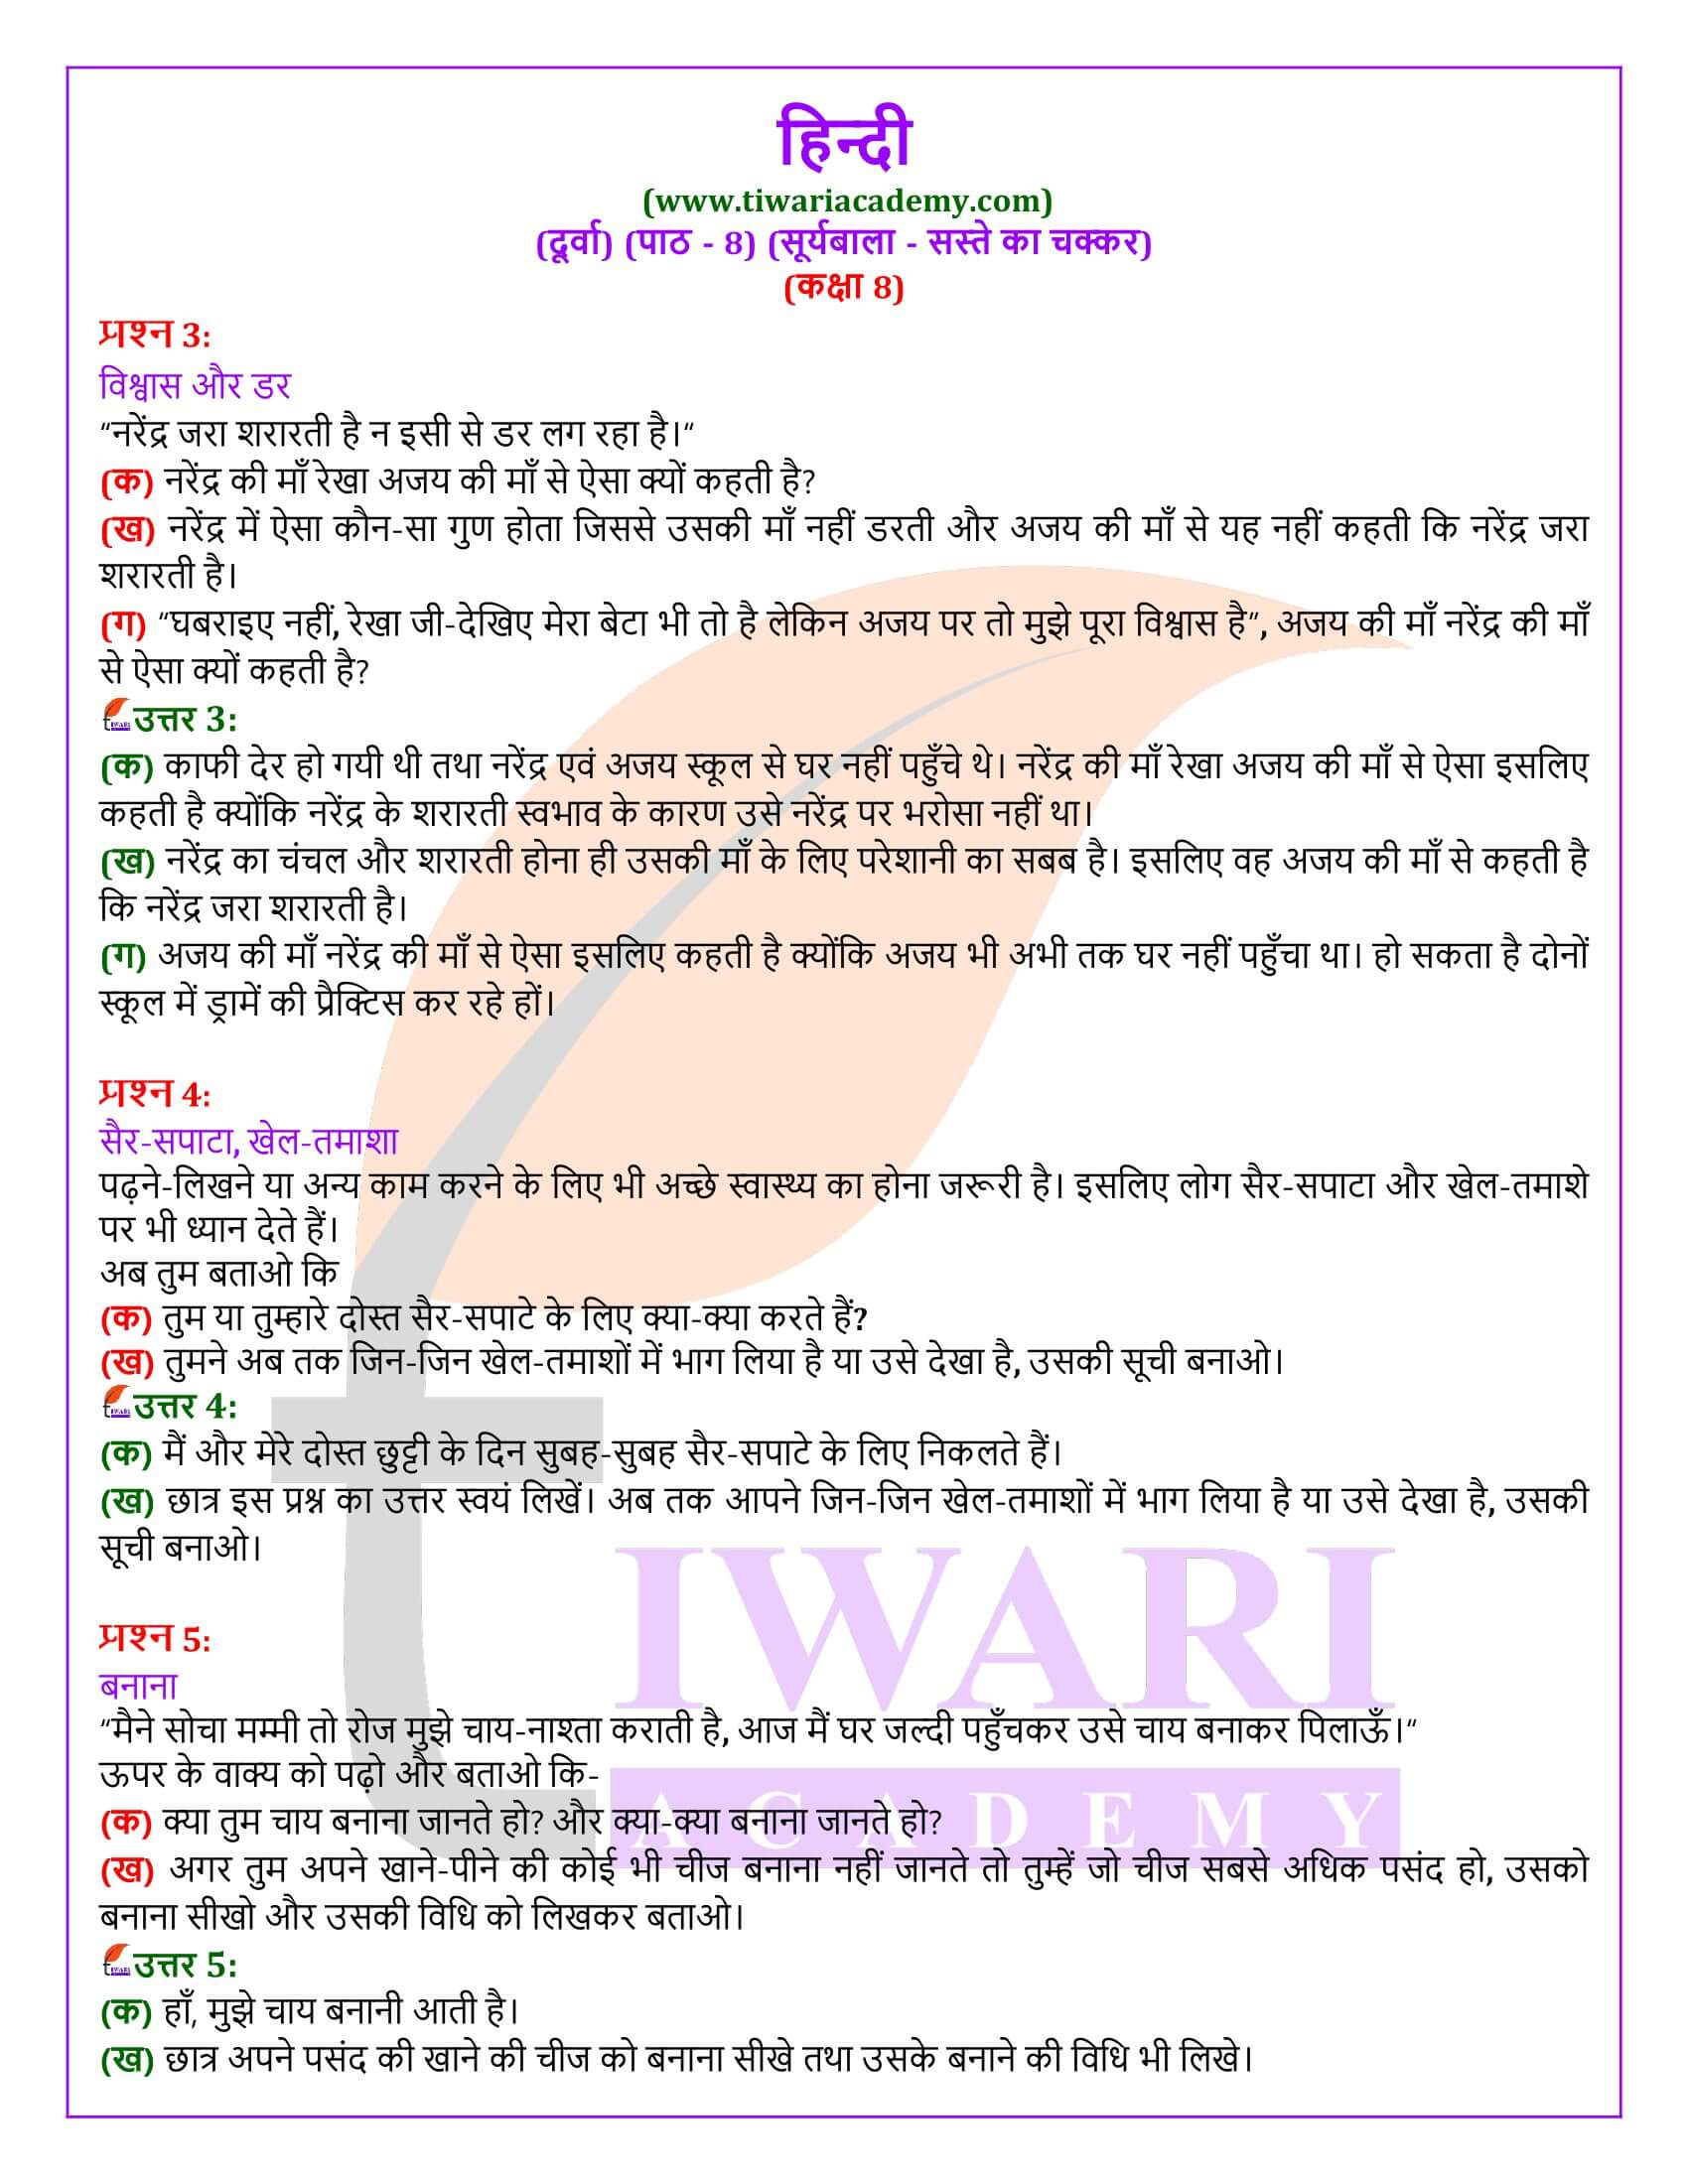 कक्षा 8 हिंदी दूर्वा अध्याय 8 सस्ते का चक्कर